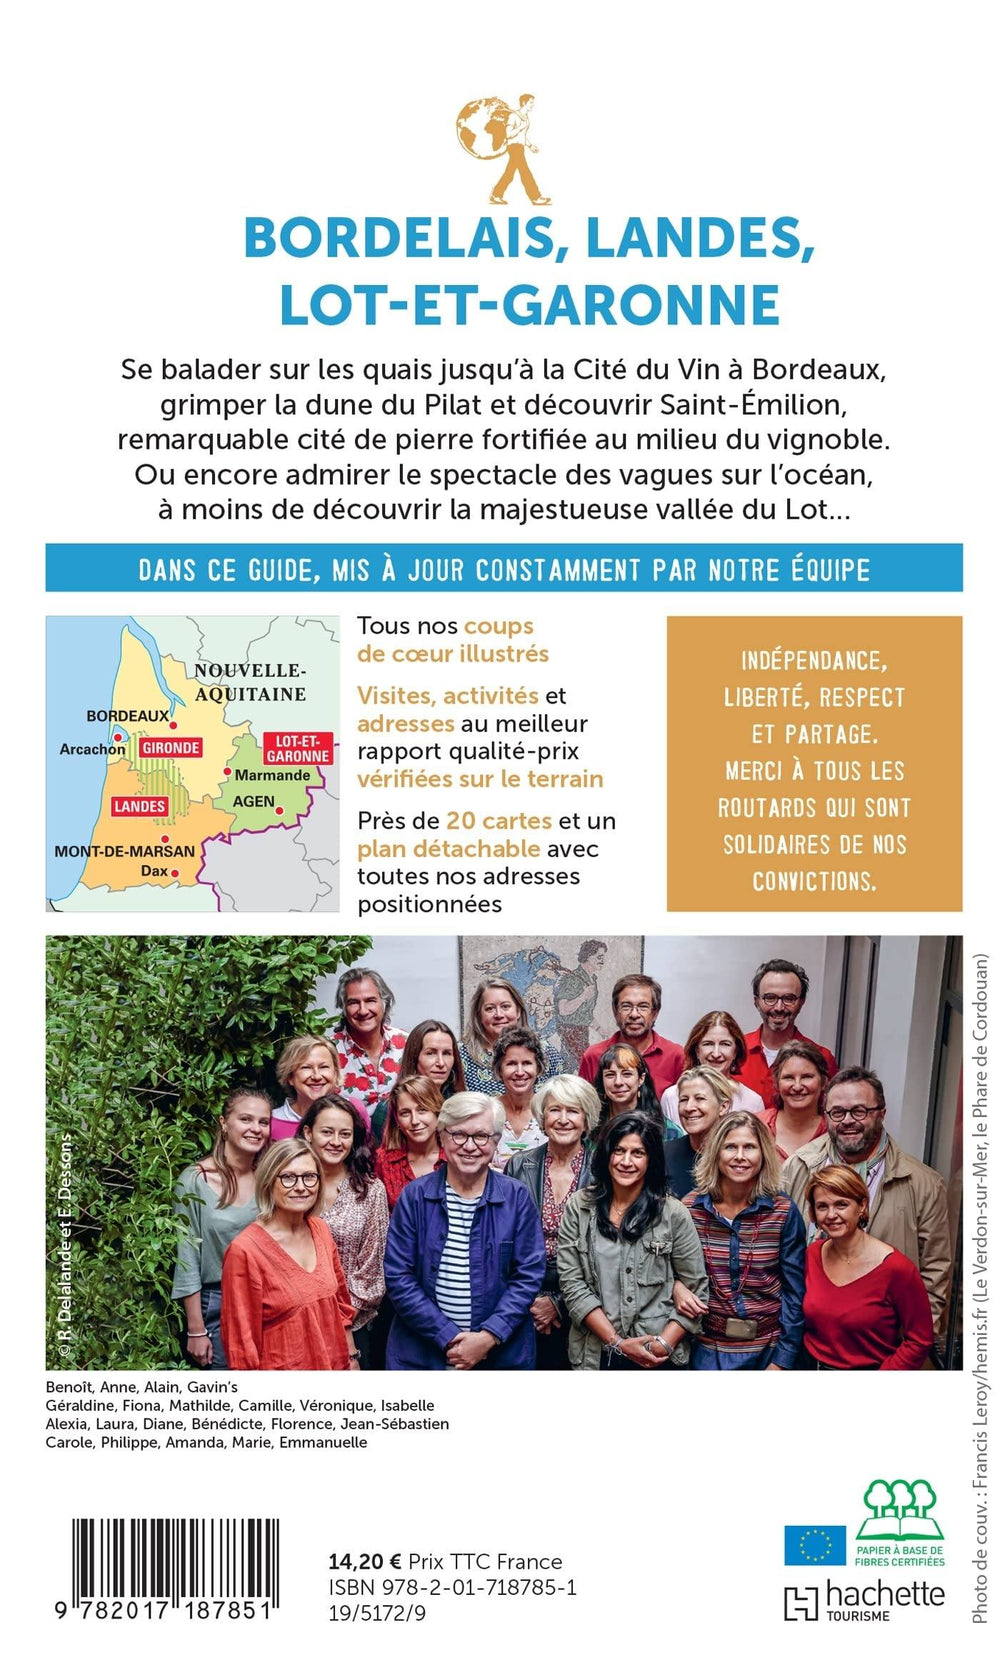 Guide du Routard - Bordelais, Landes, Lot-et-Garonne 2022/23 | Hachette guide de voyage Hachette 